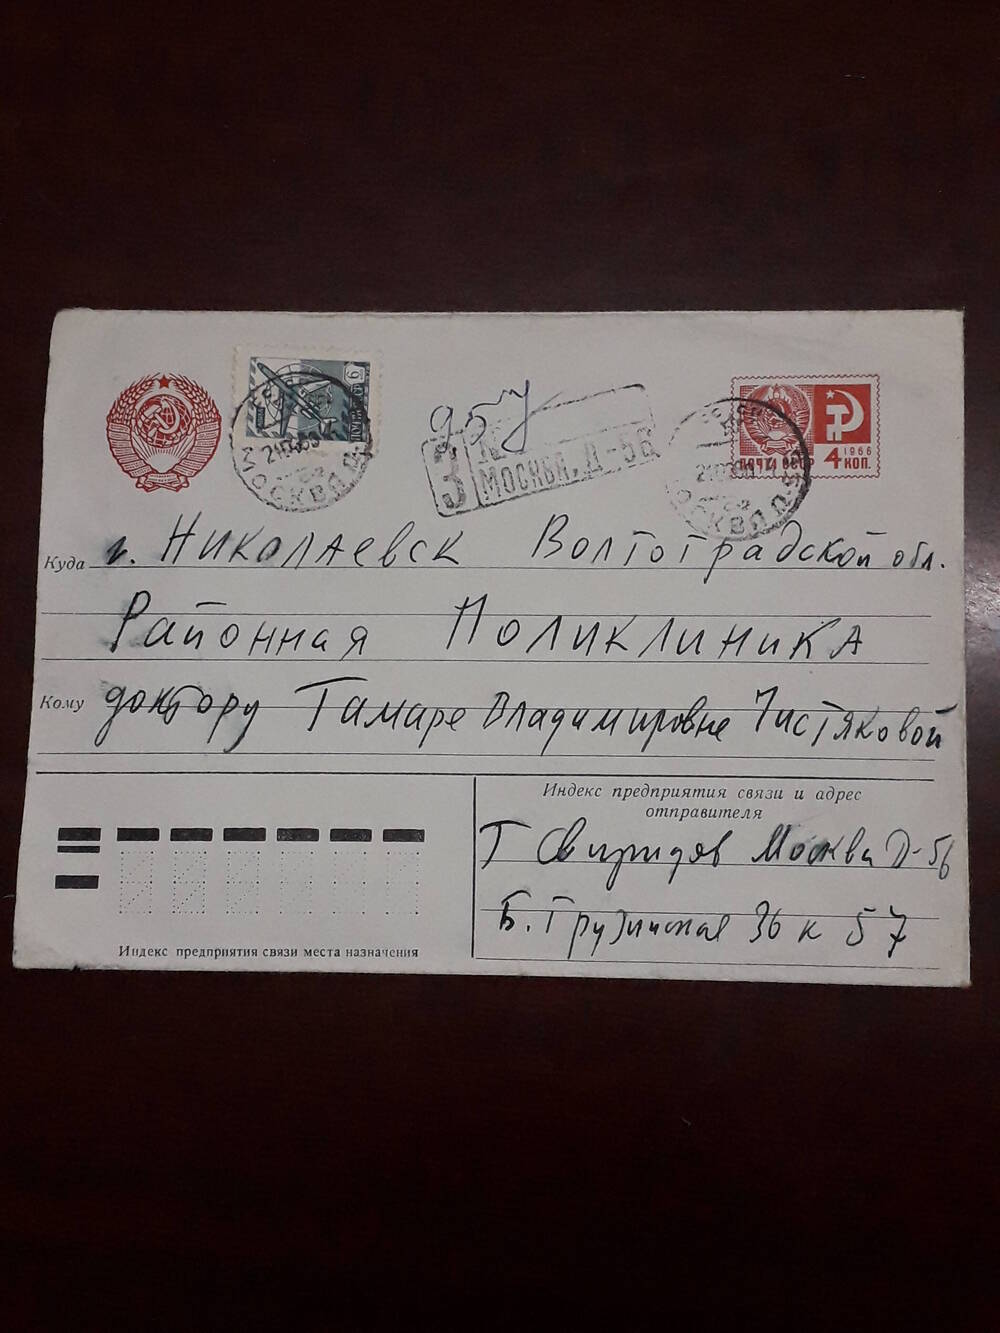 Конверт почтовый к письму Чистяковой Тамаре Владимировне от Свиридова Георгия Васильевича